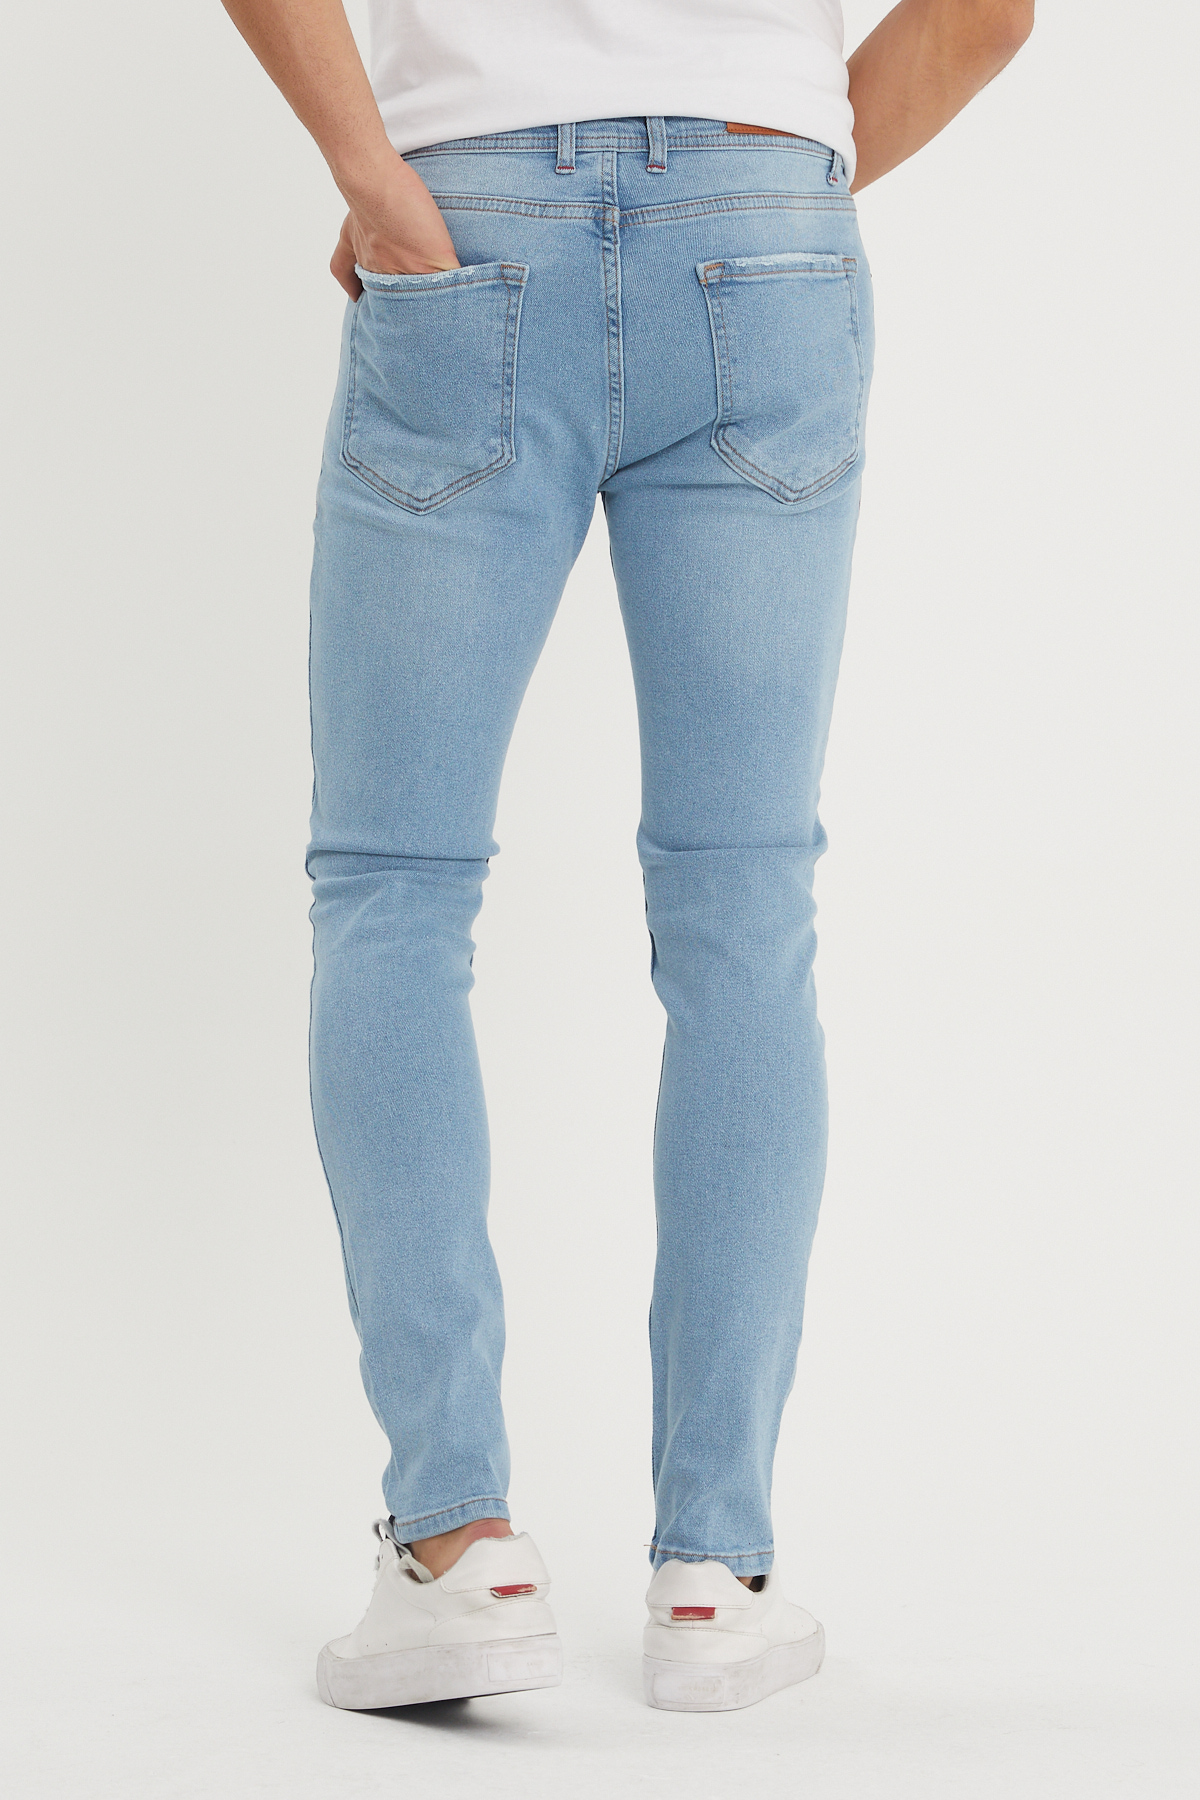 Mavi Slim Fit Jean Pantolon 1KXE5-44357-12 - 3